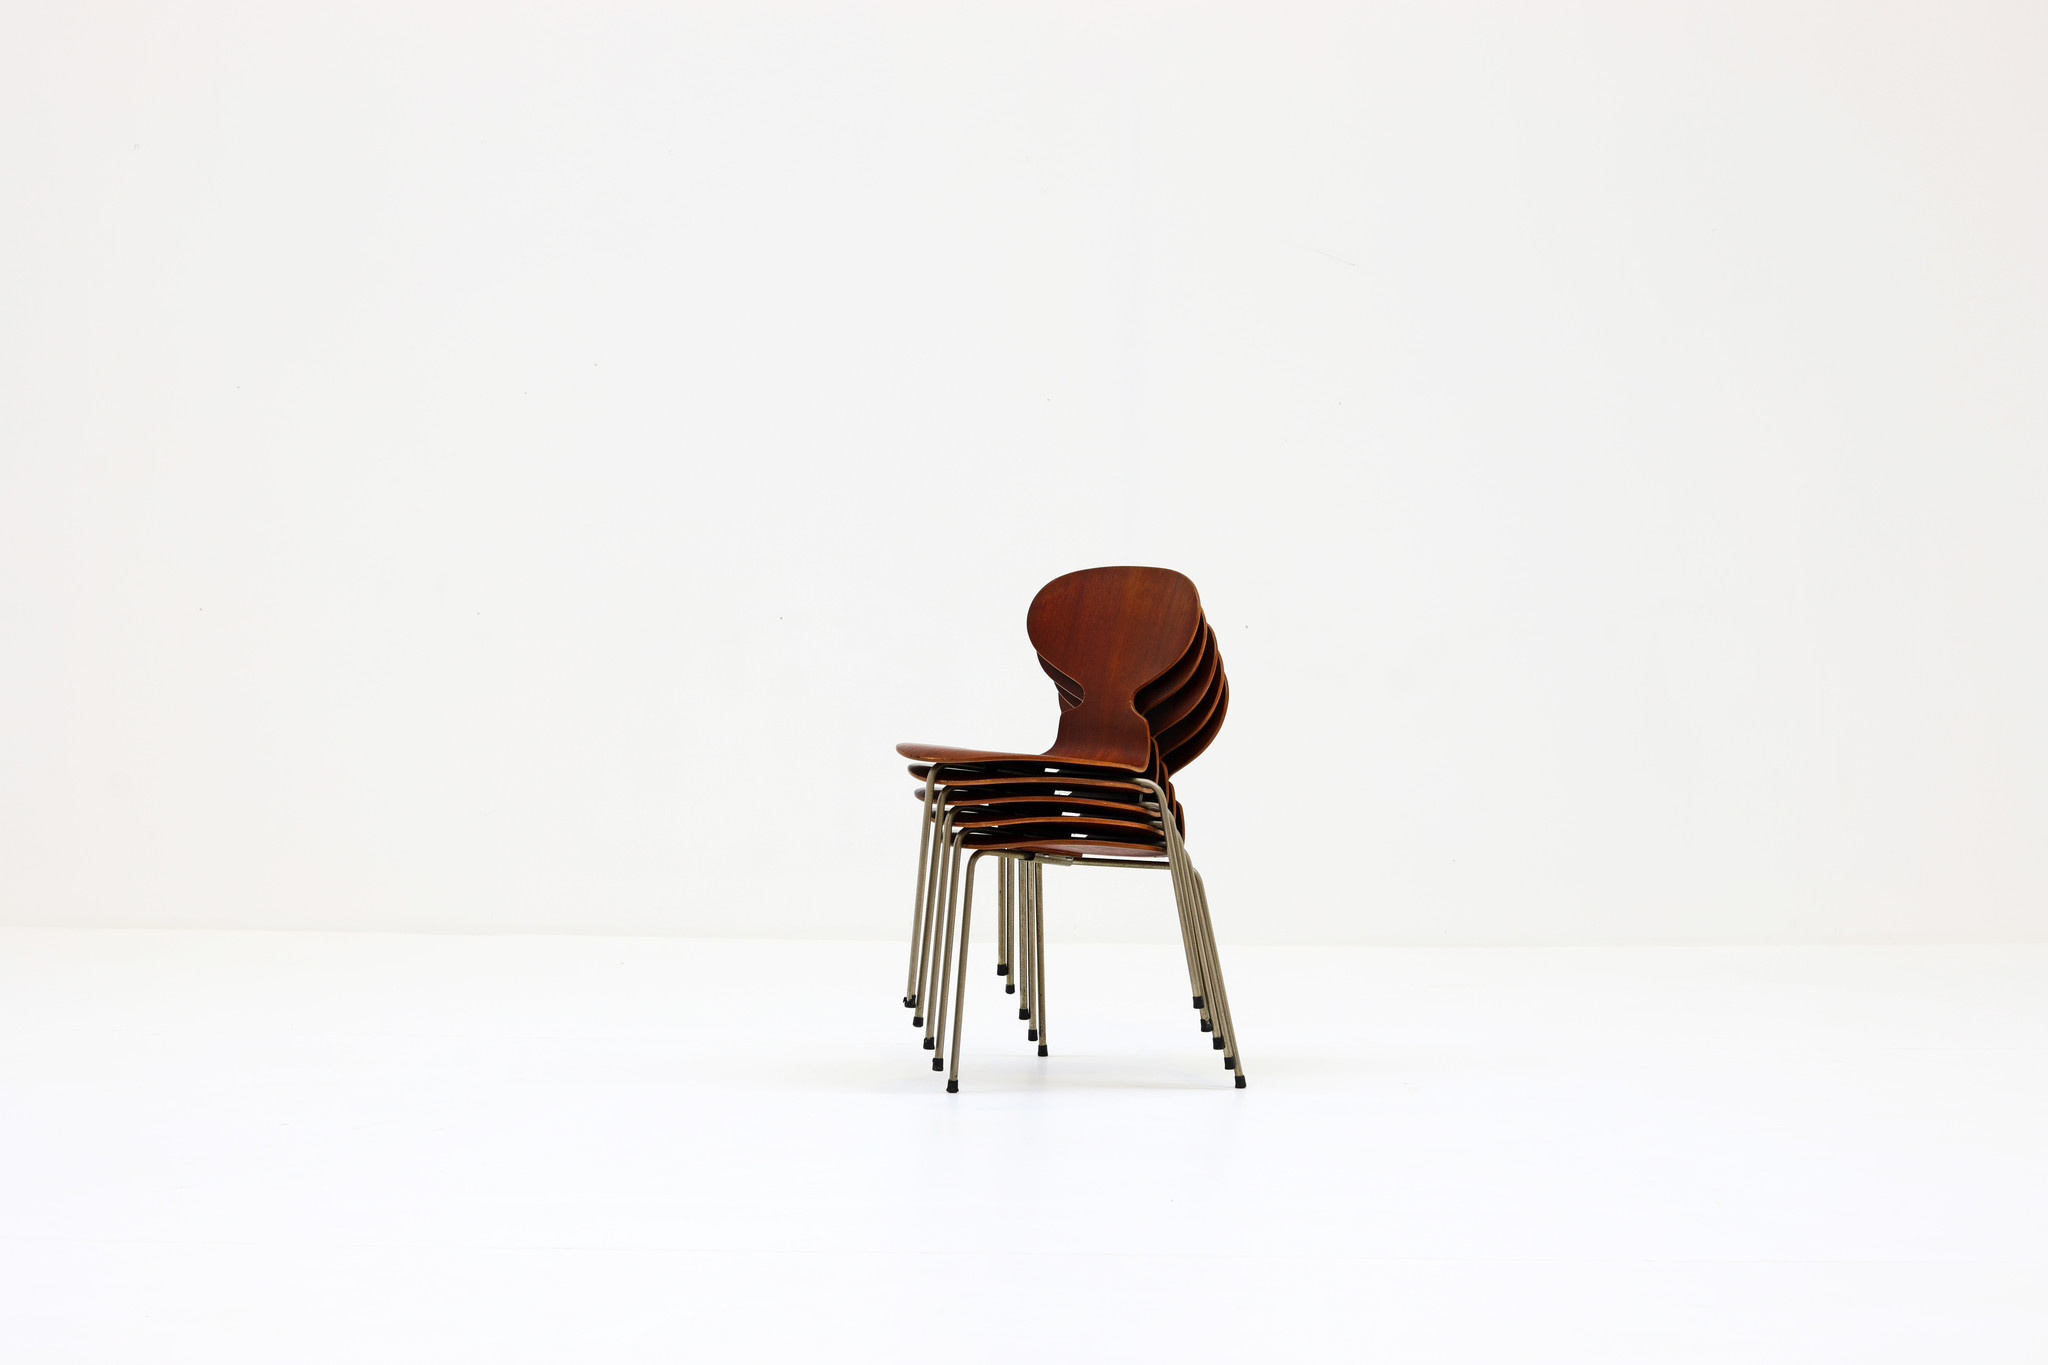 Arne Jacobsen Ant Chairs for Fritz Hansen, 1960's